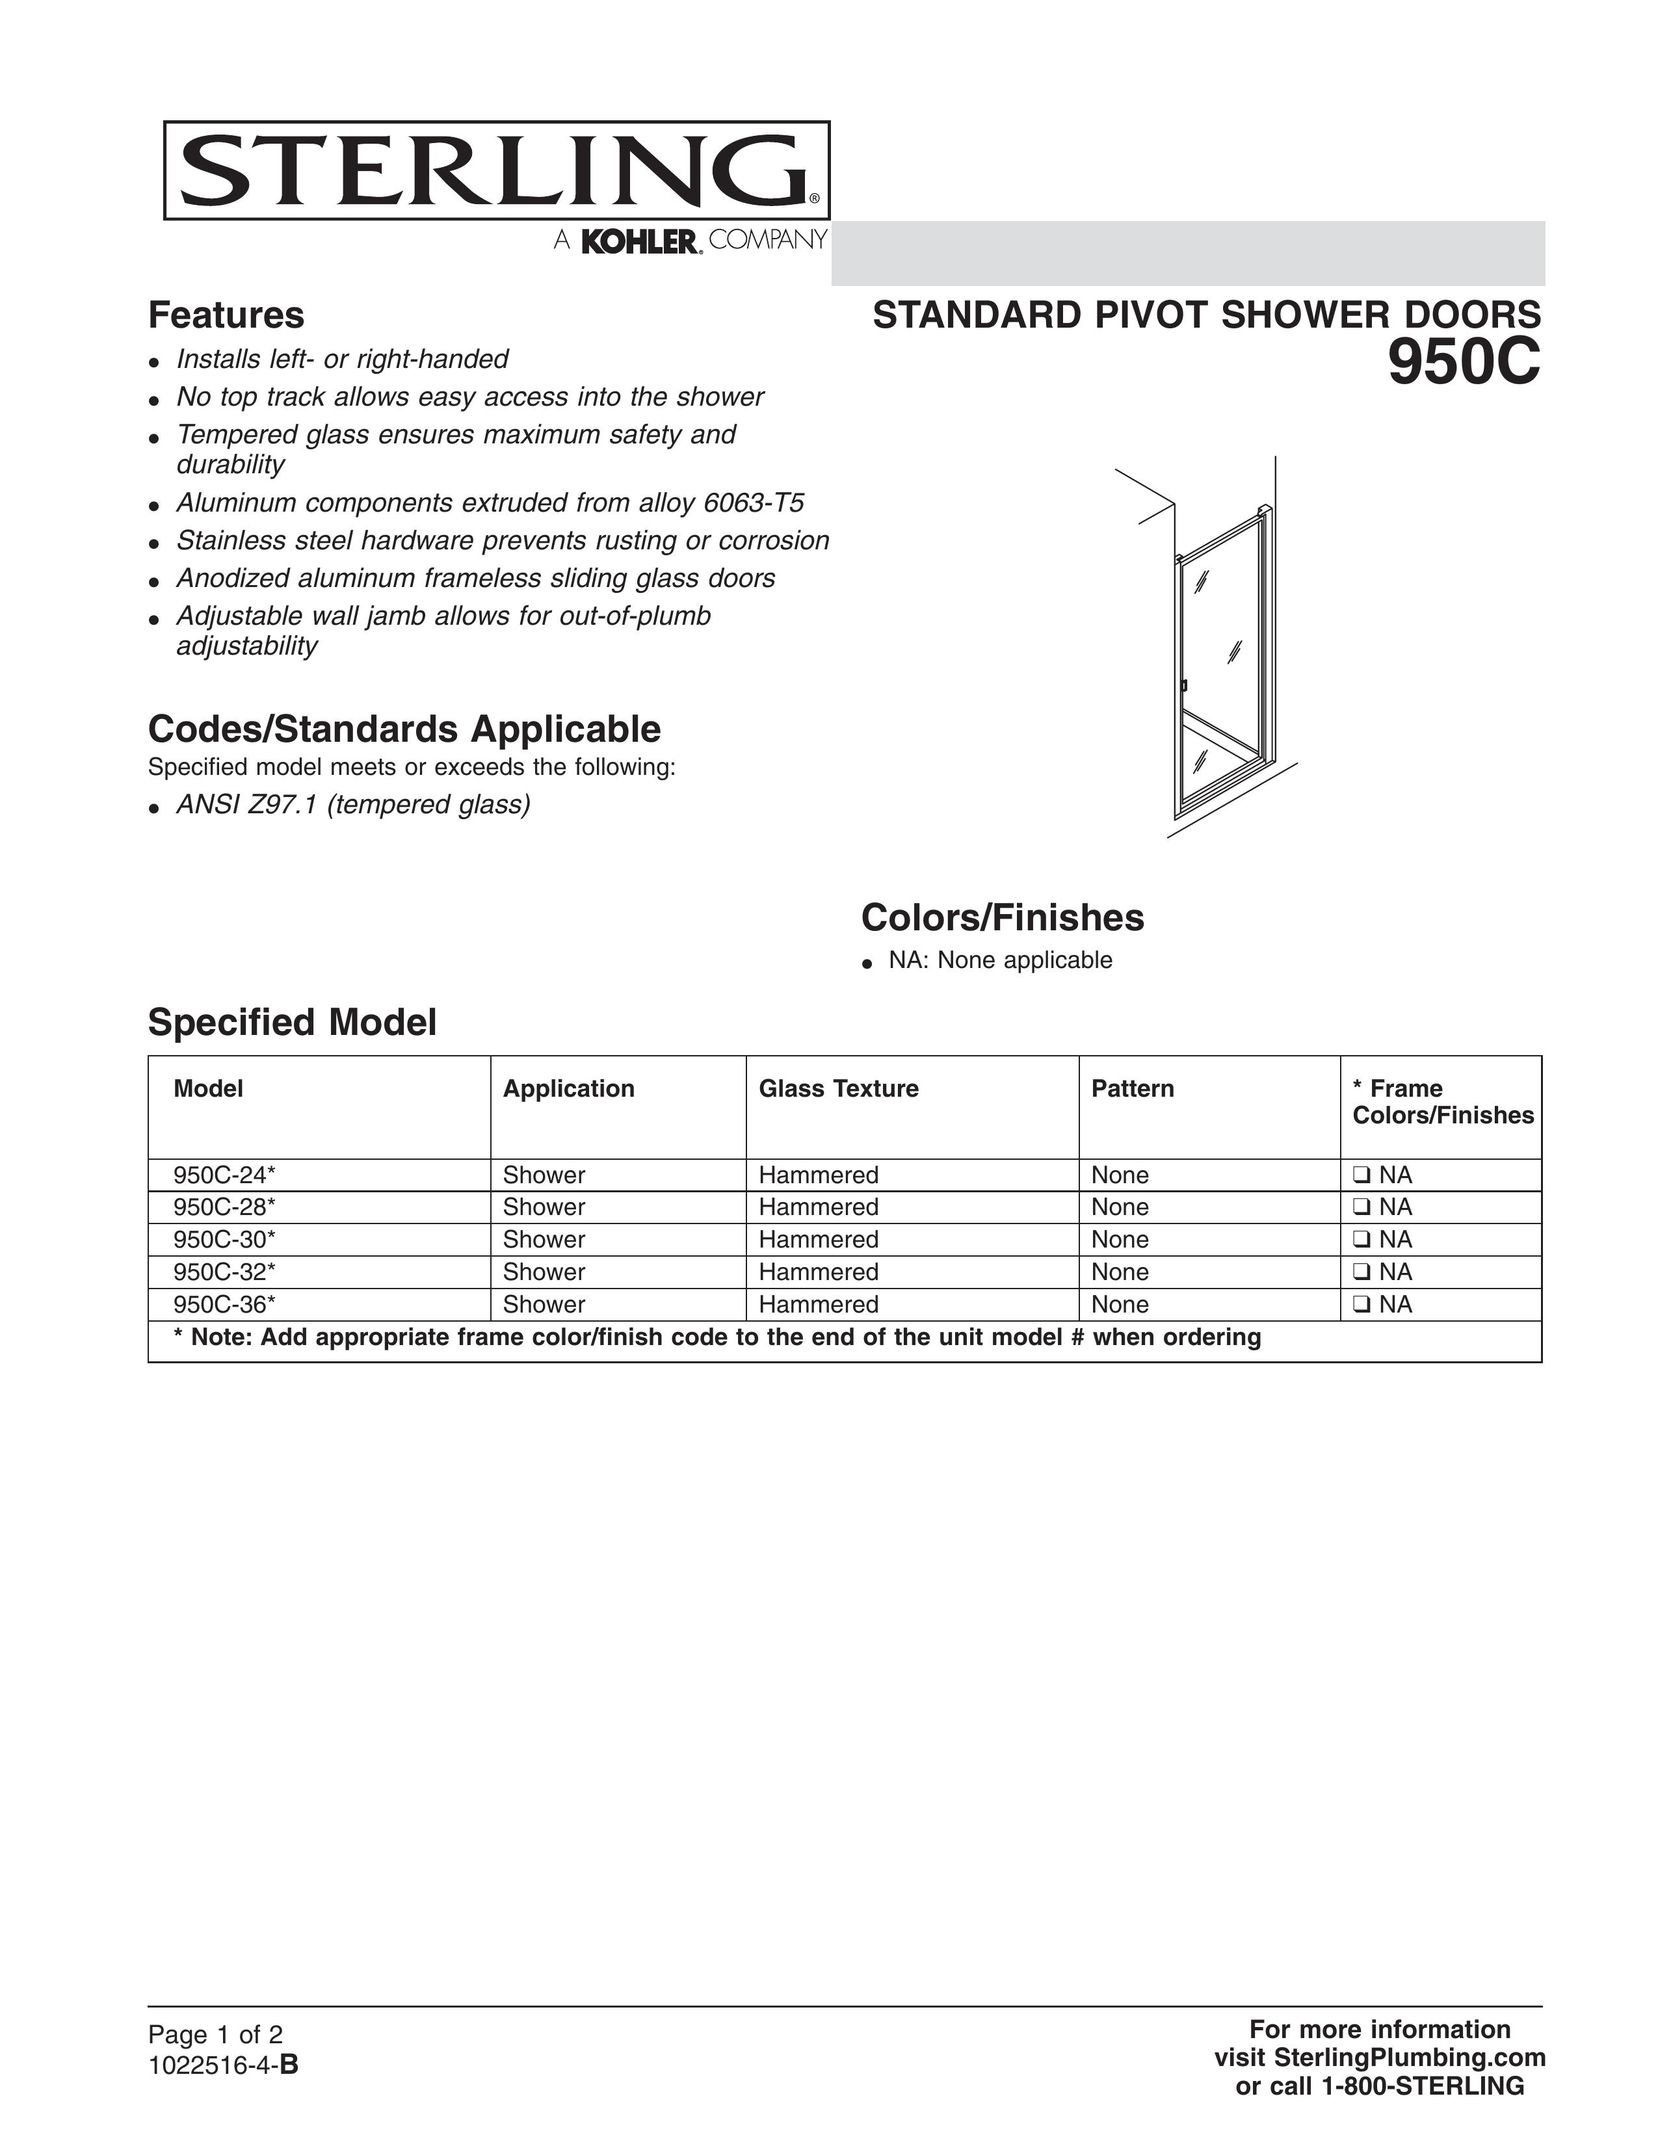 Sterling Plumbing 950C-36* Door User Manual